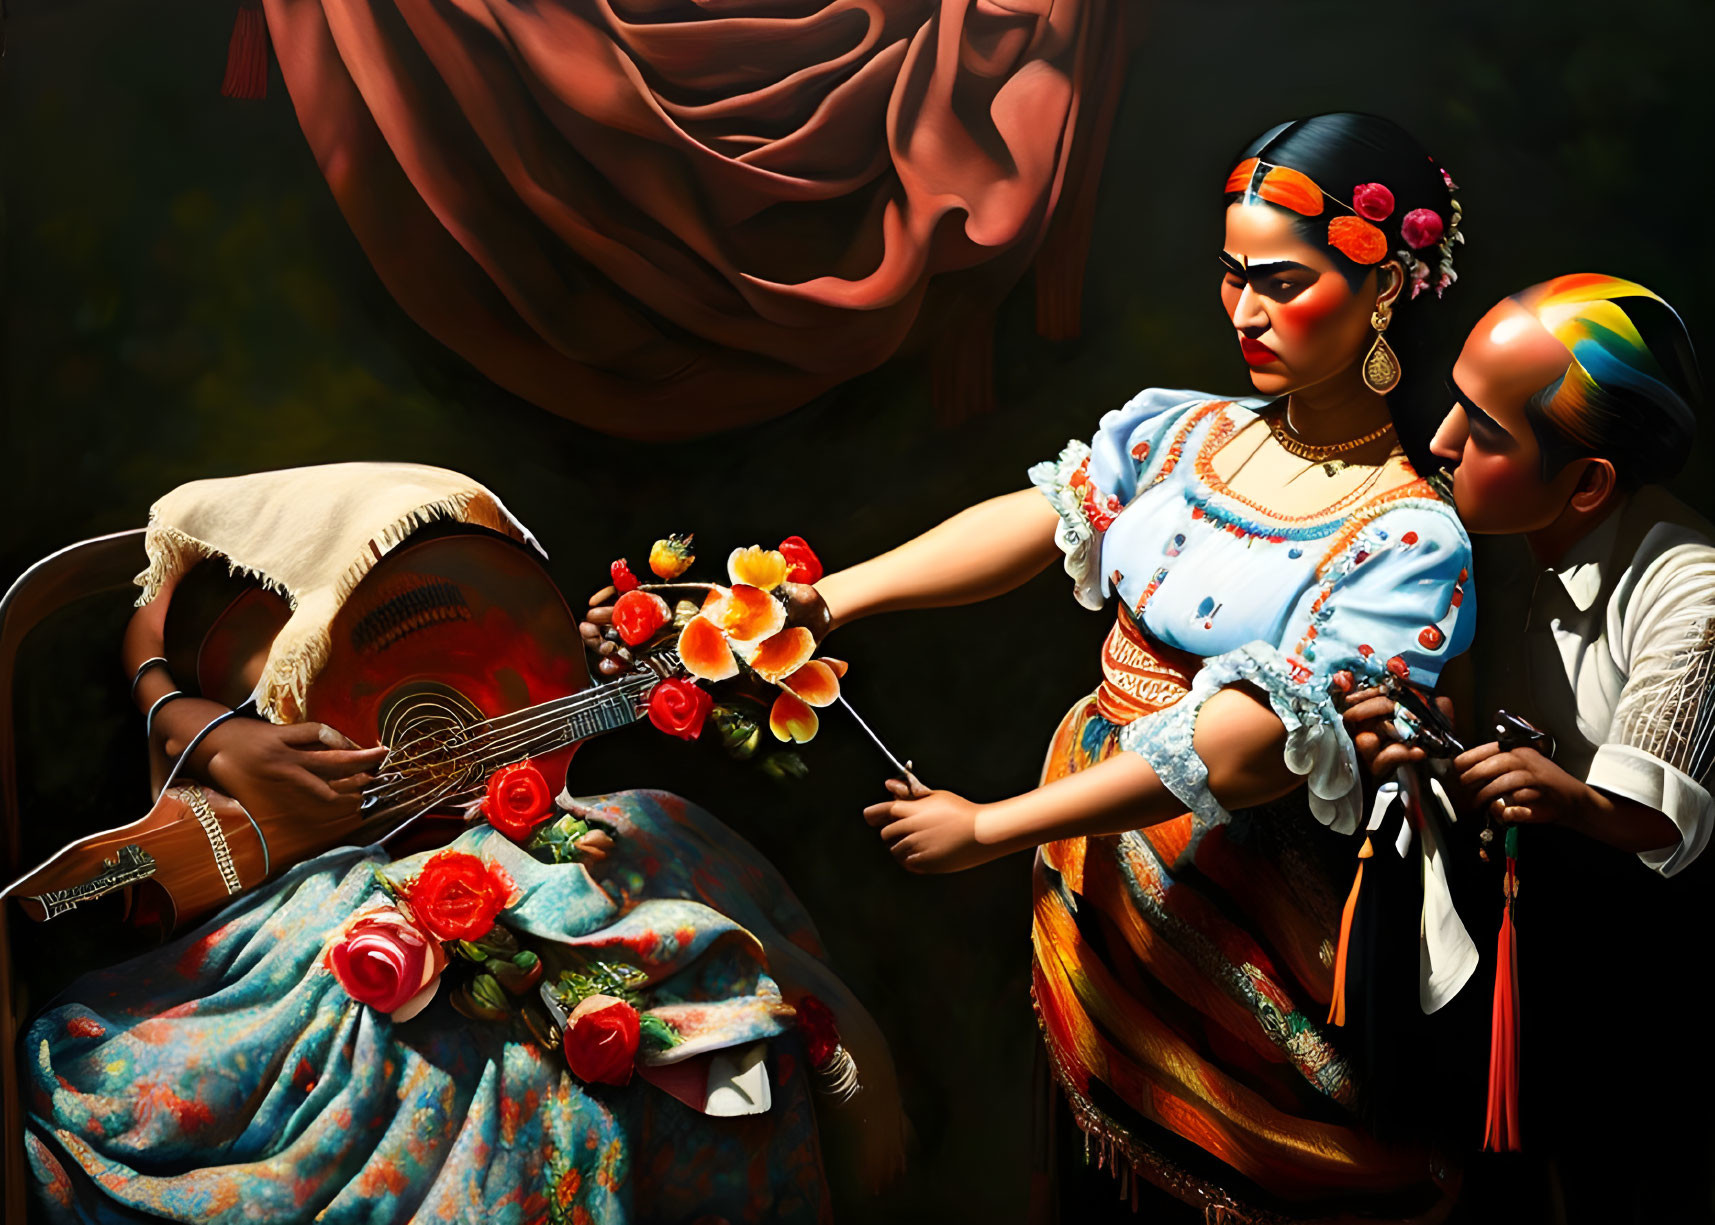 Judith by Frida